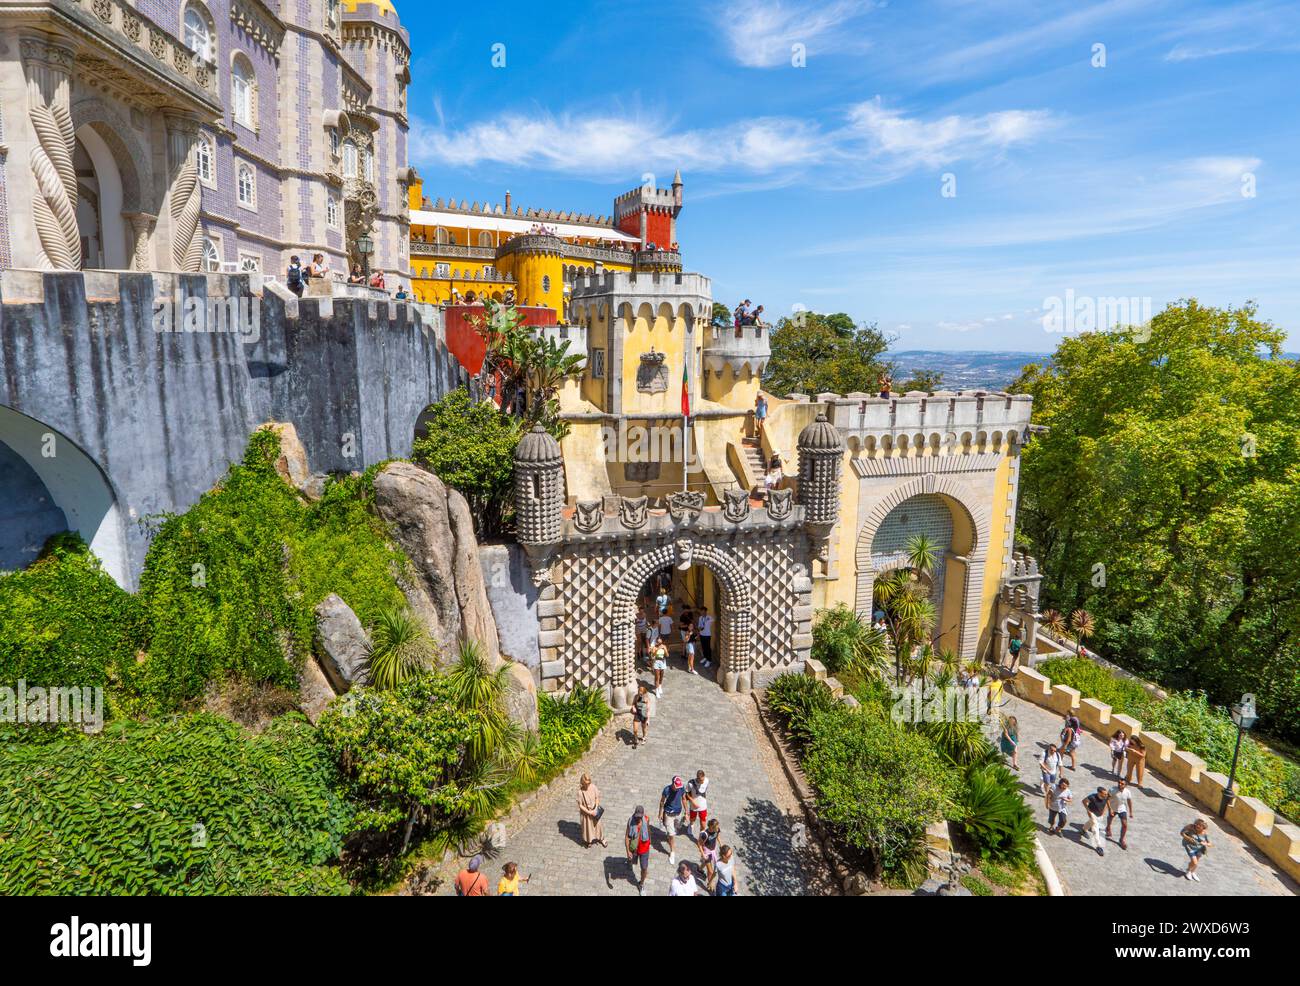 Vista panoramica aerea dei turisti che visitano e scattano foto al Palácio da pena lungo l'ingresso e il sentiero collinare sotto un cielo azzurro soleggiato. Sintra, Foto Stock